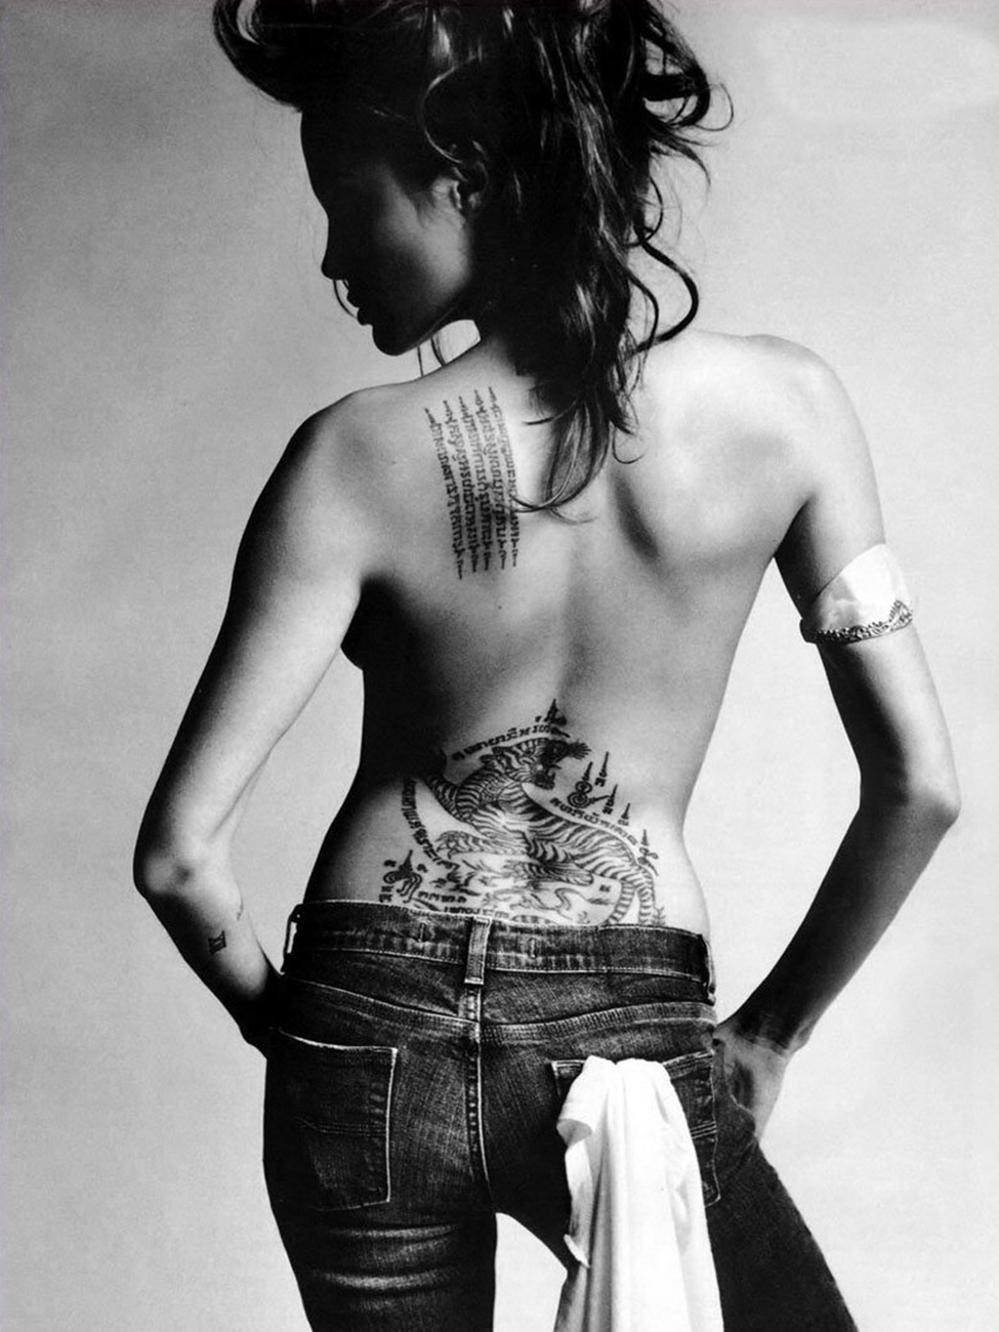 Vida tattoo, de la marginalidad al fashionismo: radiografía de una batalla cultural